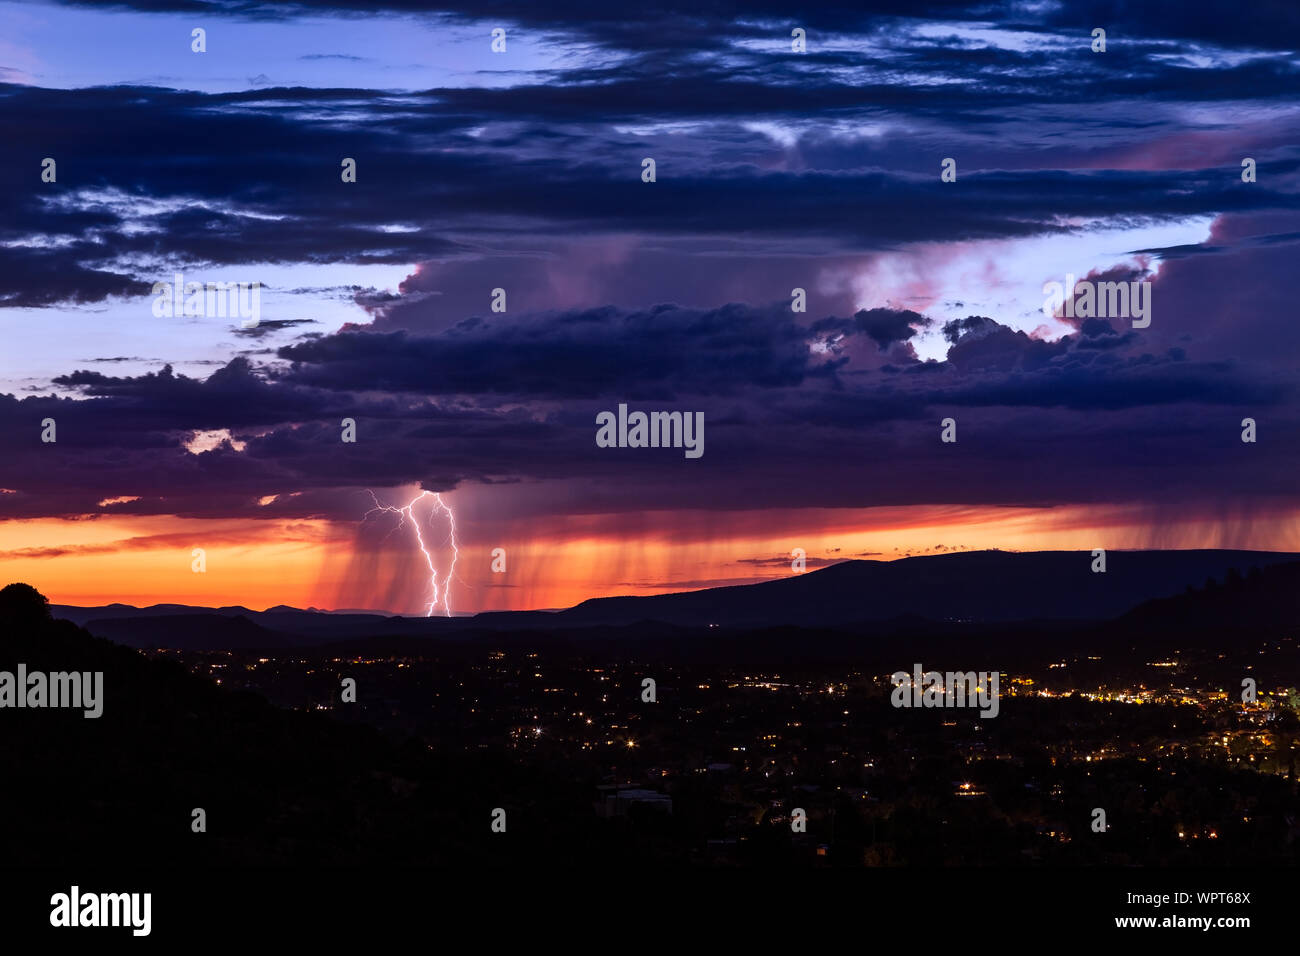 Sonnenuntergang in Sedona, Arizona mit Blitzeinschlägen von einem fernen Sturm Stockfoto